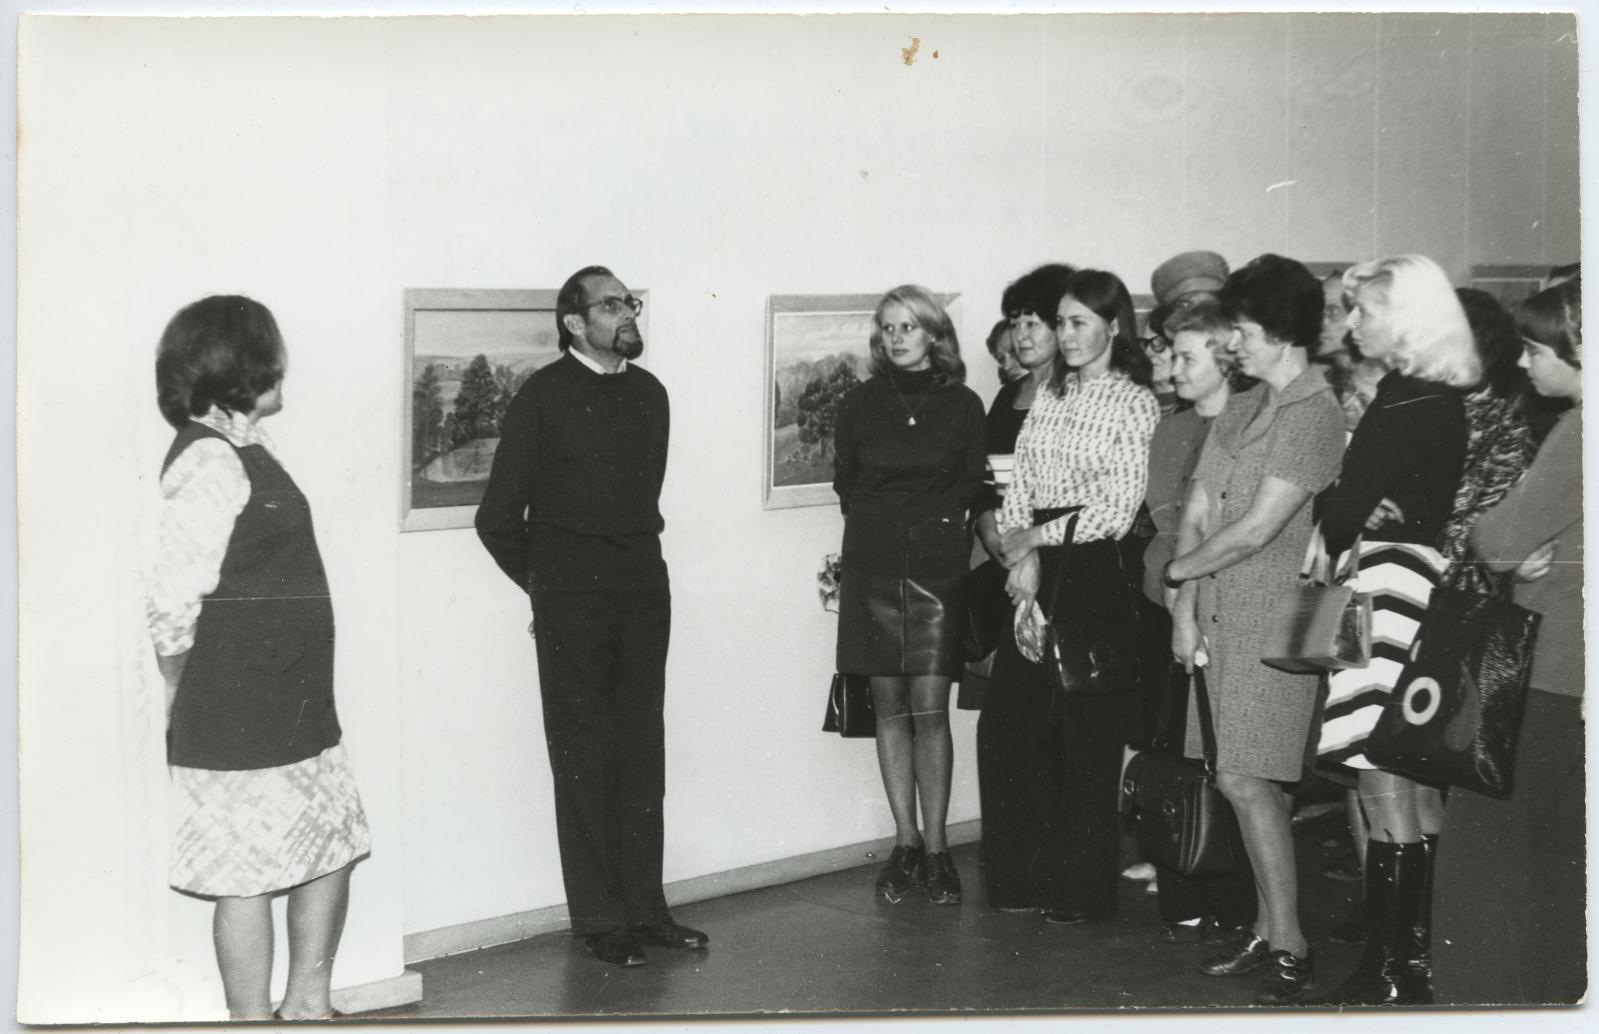 I grupp kohtub Tartu Kunstinäitusel 8. oktoobril 1975 maalikunstnik I. Maliniga